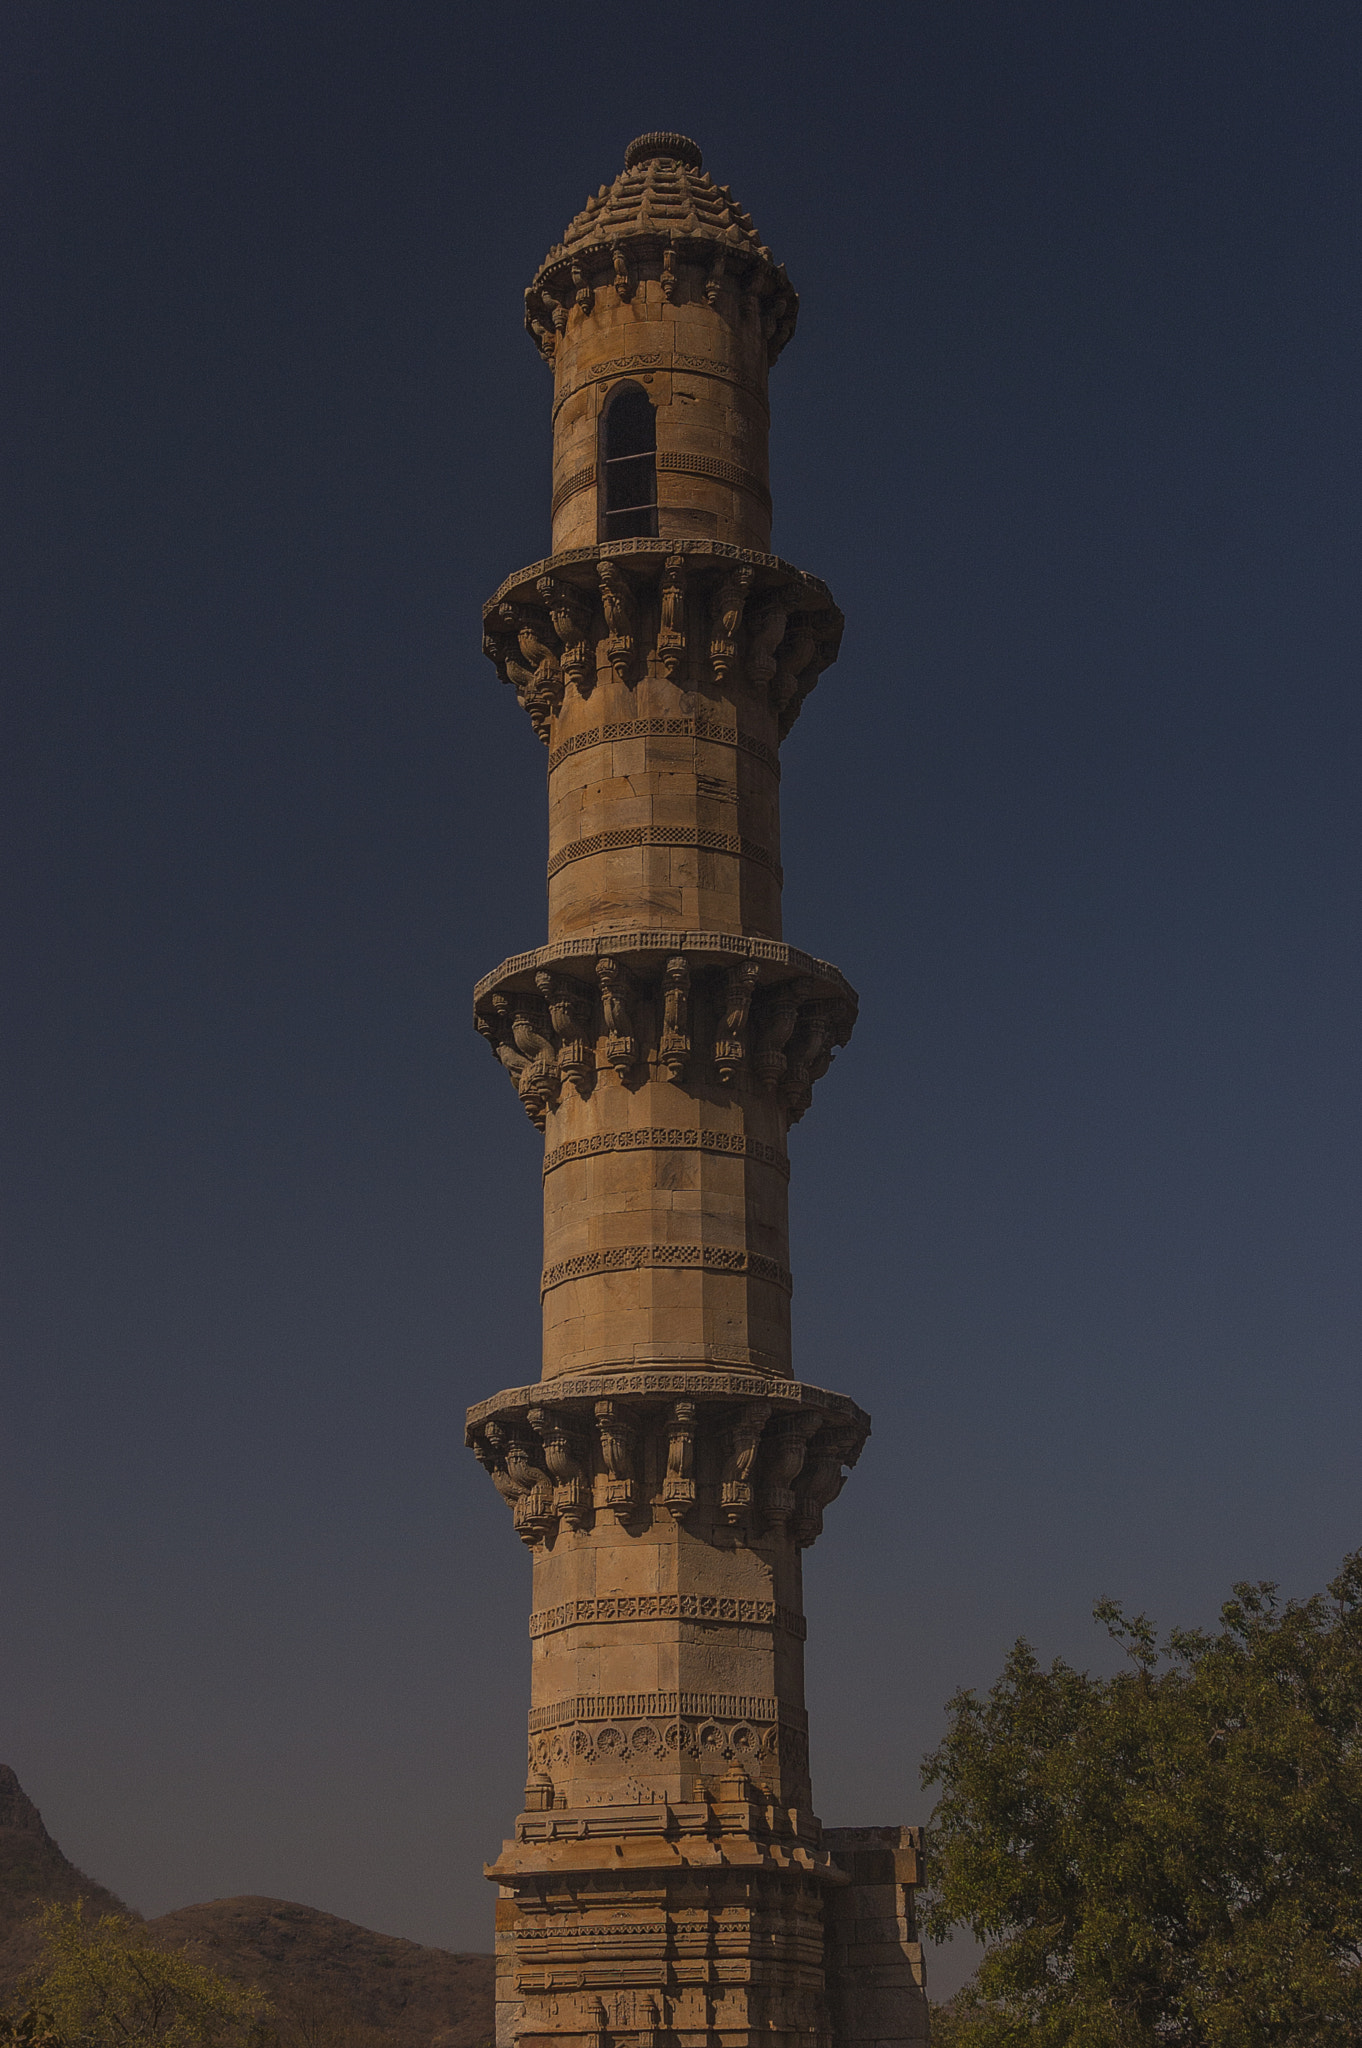 Nikon D40 sample photo. Ek minar ki masjid at champaner, gujarat, india photography